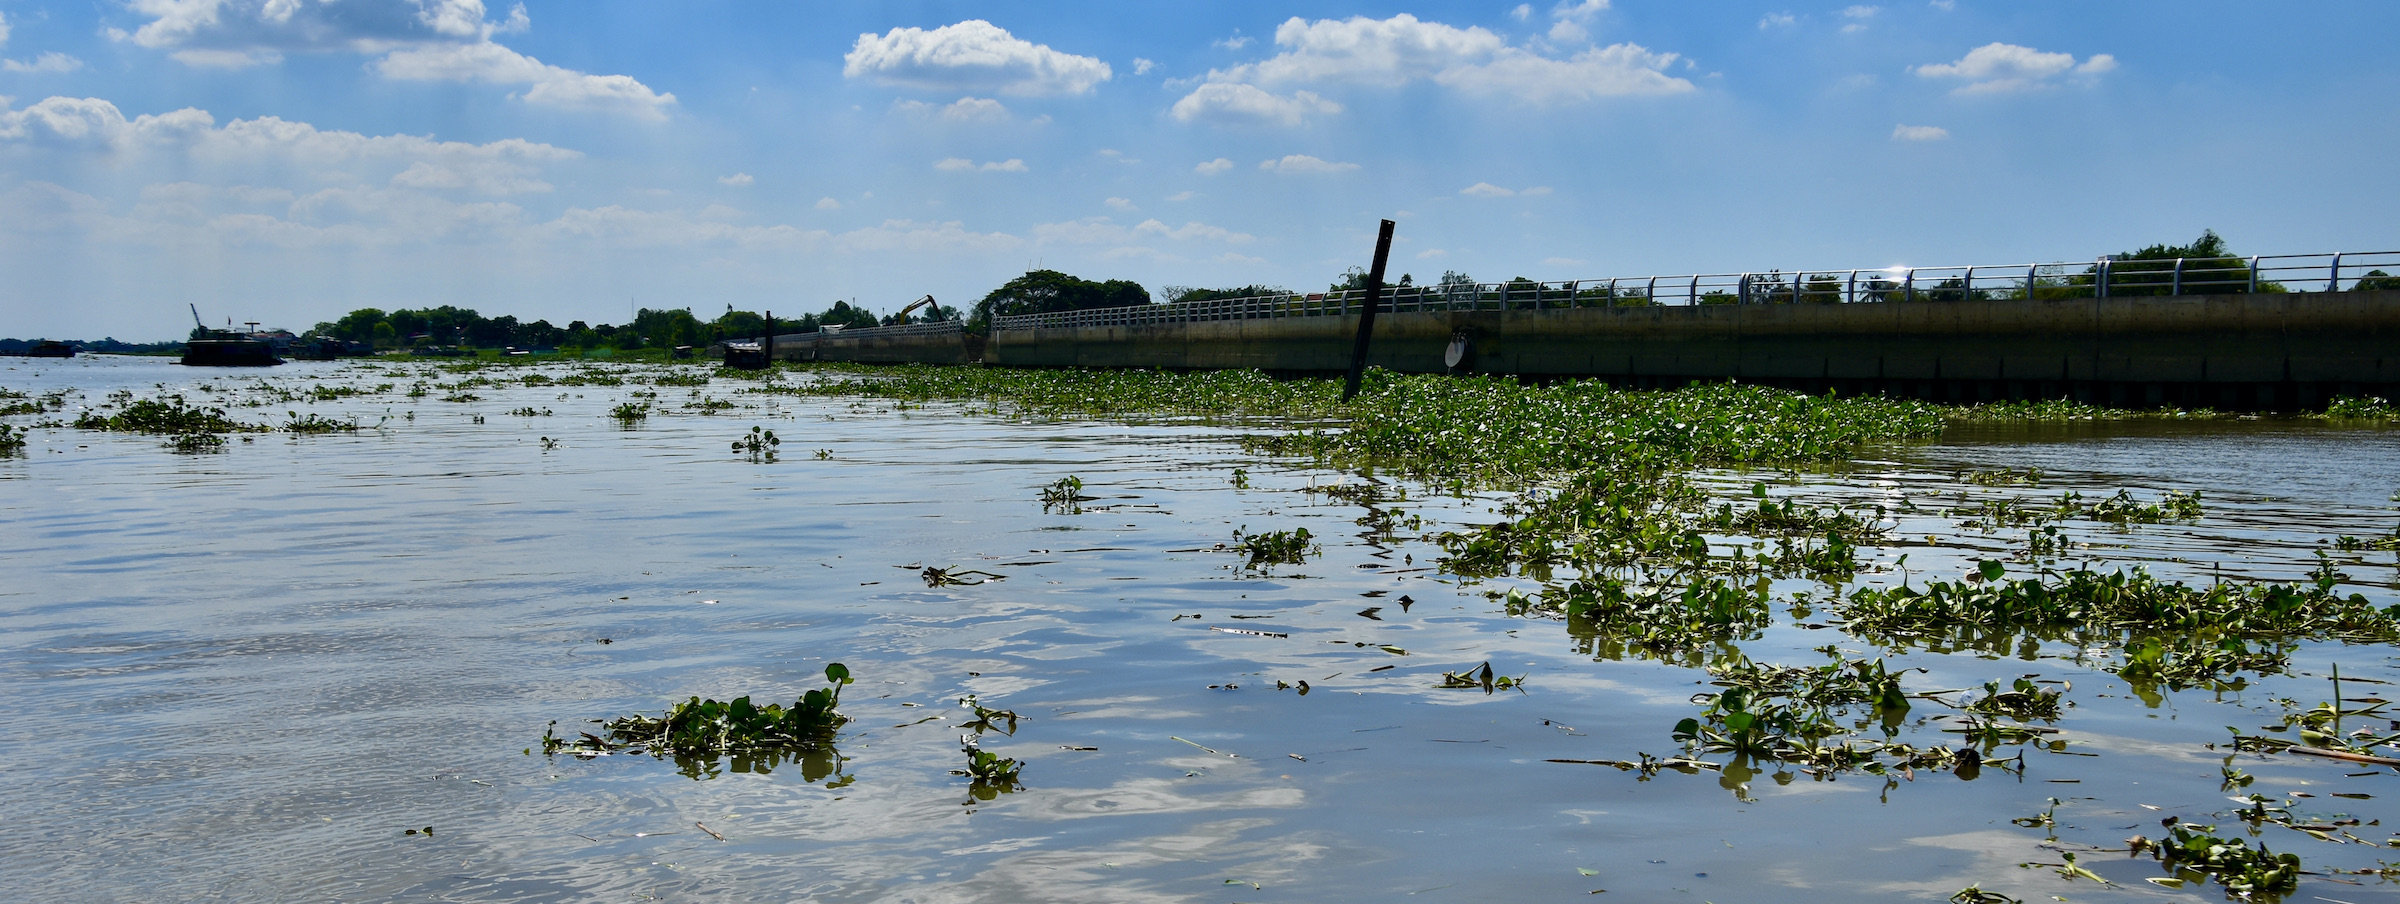 Water Hyacinth, Mekong Delta